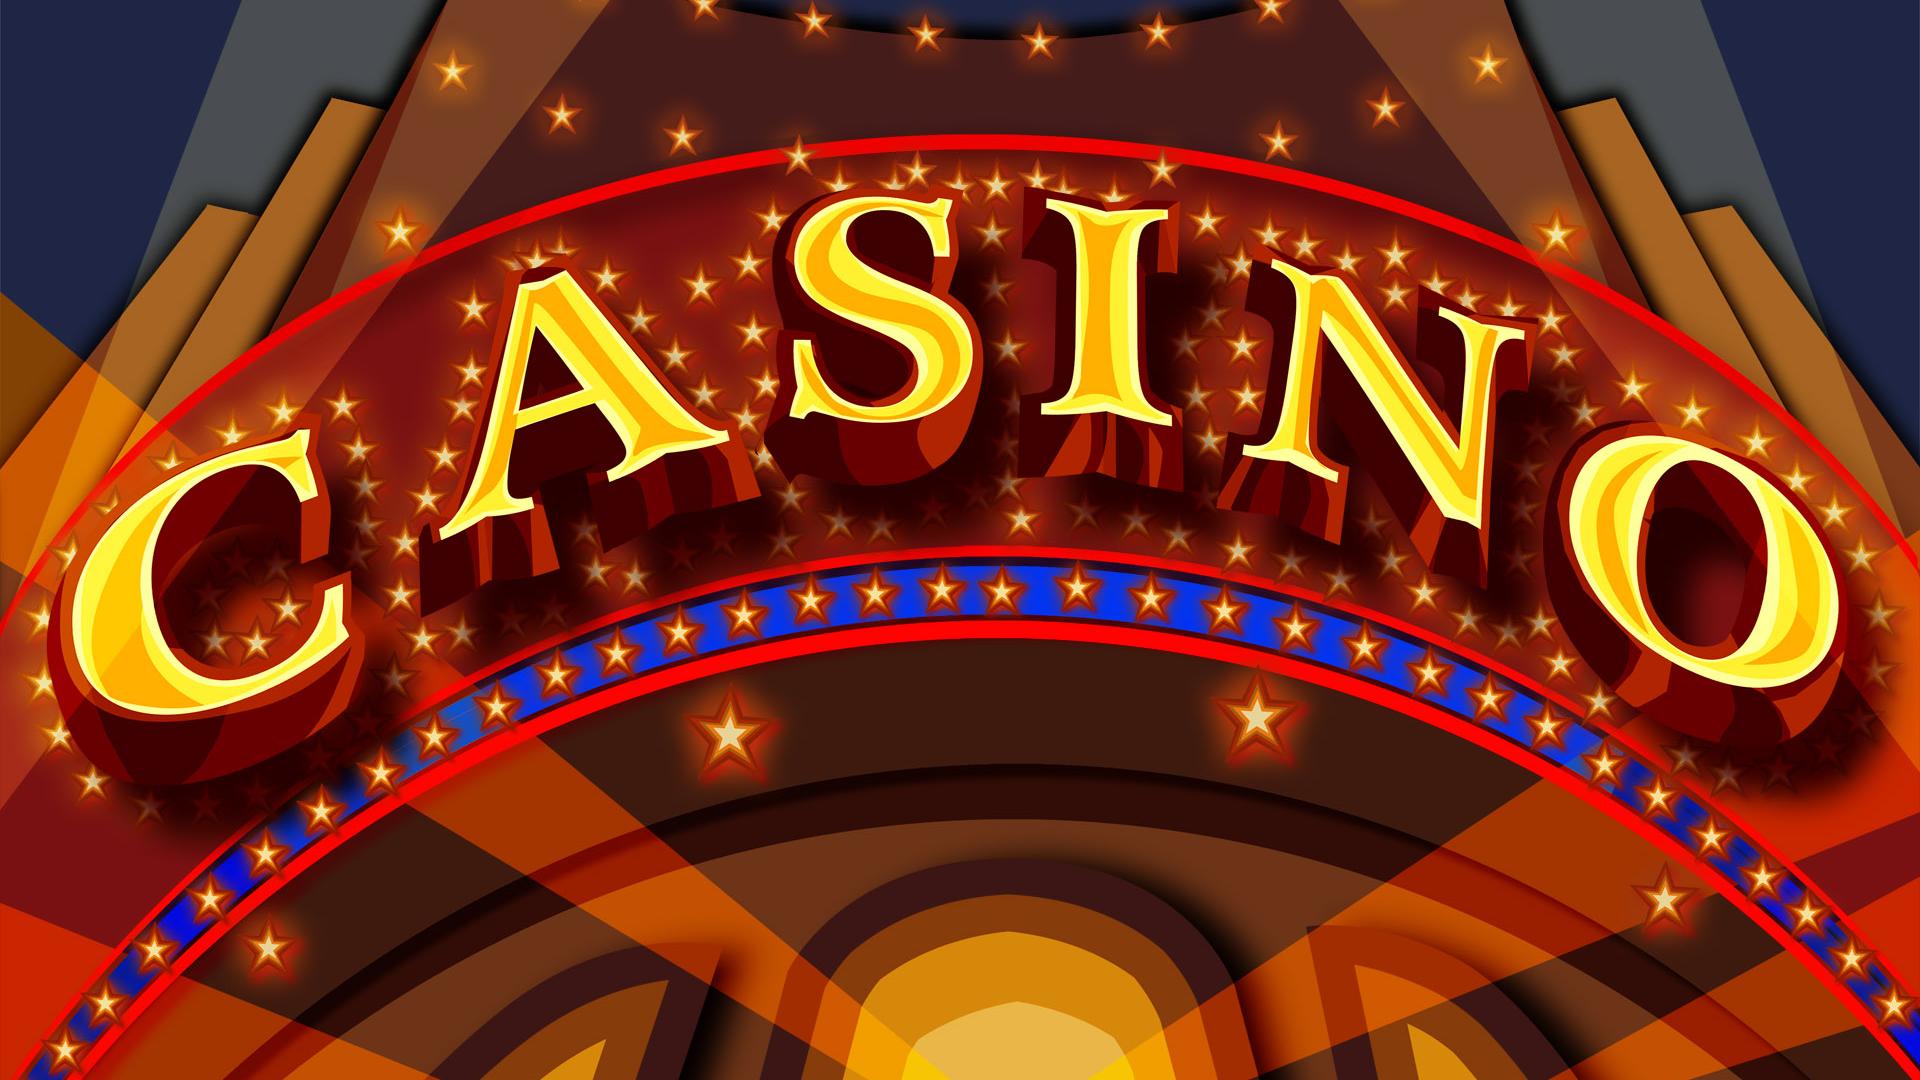 Casino slot machine 43 million